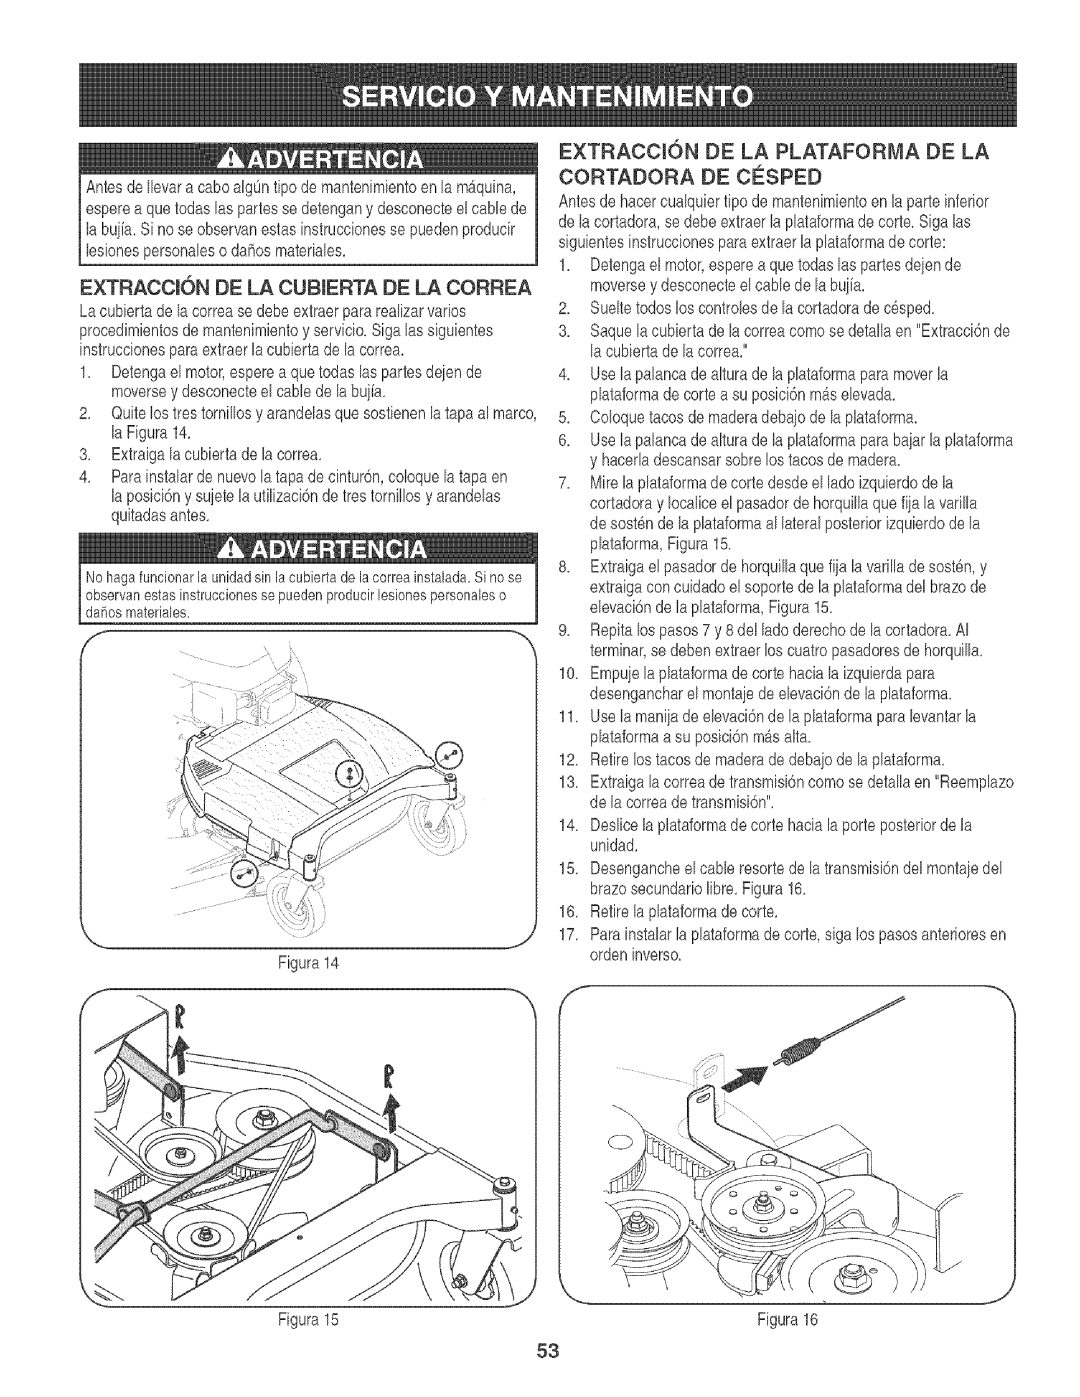 Craftsman 247.88933 manual Extraccksn De La Cubierta De La Correa 